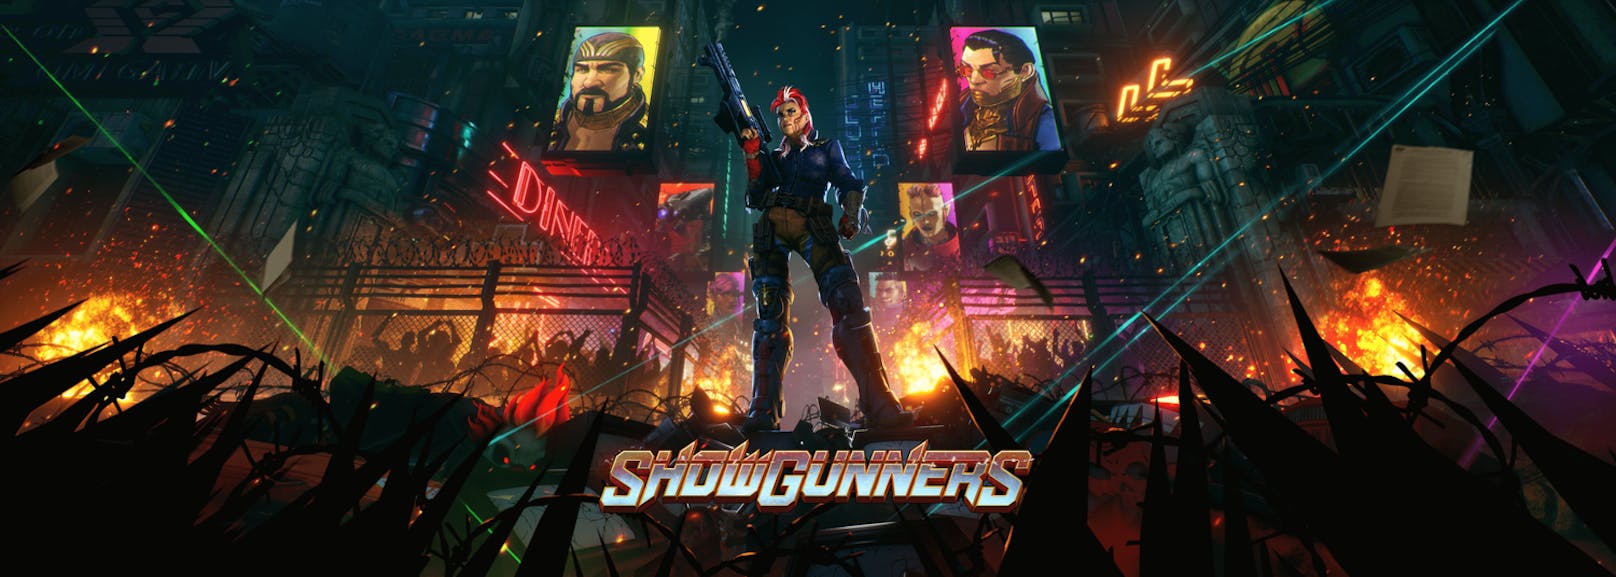 "Showgunners", das actiongeladene Rundentaktikspiel von Good Shepherd Entertainment &amp; Artificer, erscheint am 2. Mai für PC.